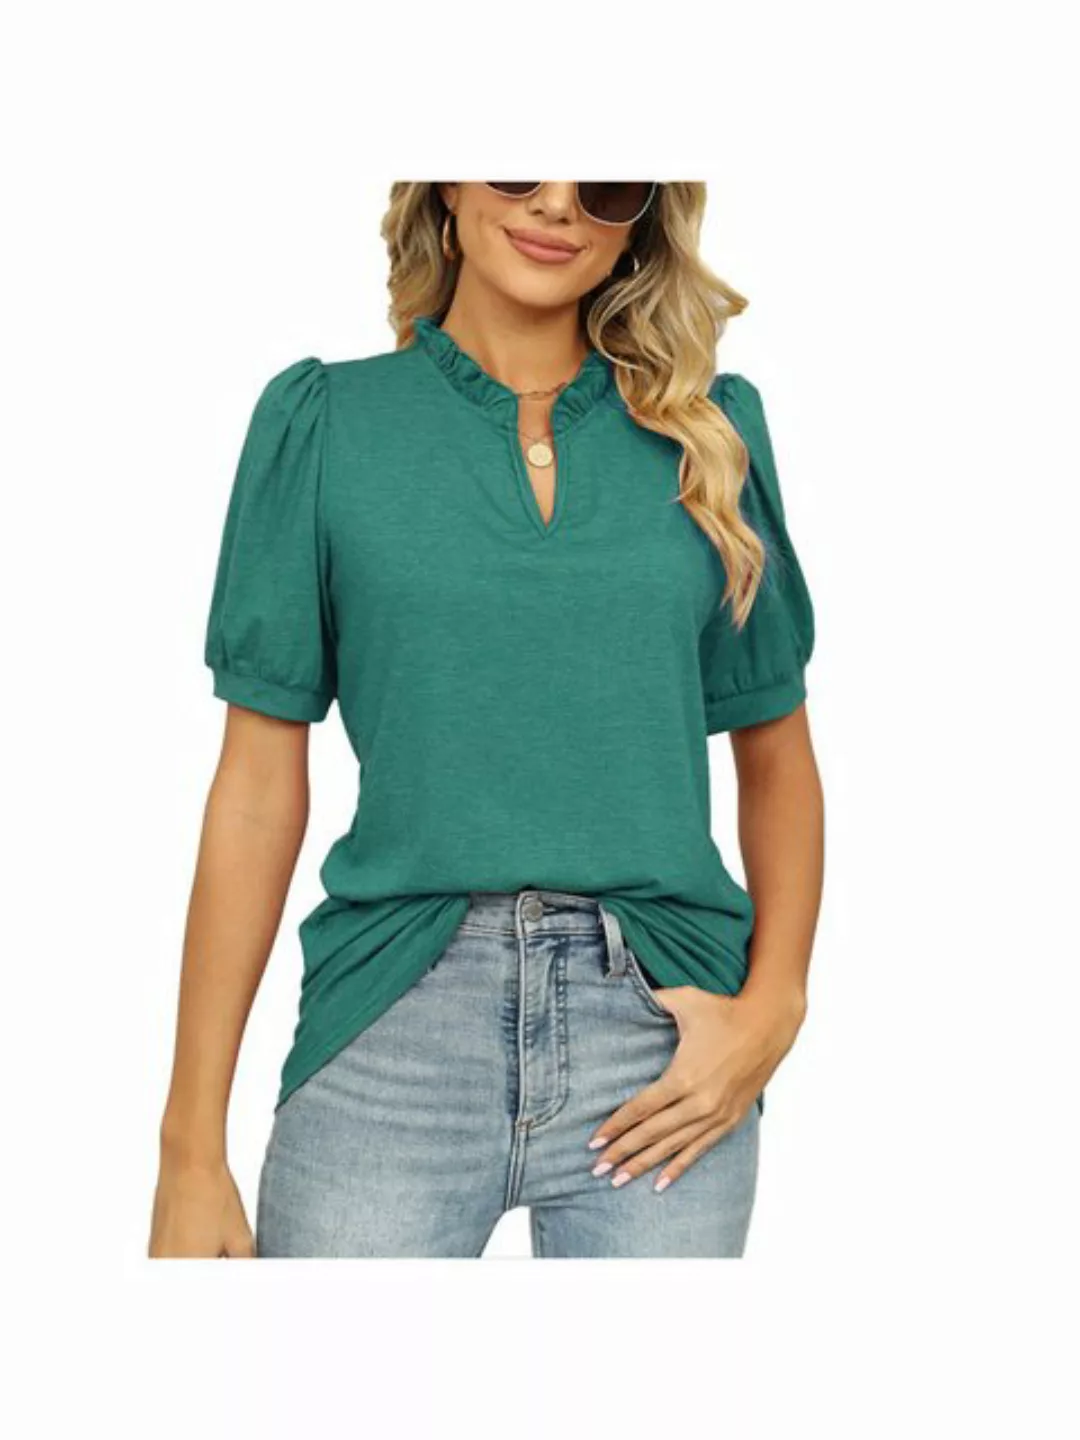 KIKI T-Shirt Bluse Damen Oberteil Damen Elegant Tshirt Leicht Sommerblusen günstig online kaufen